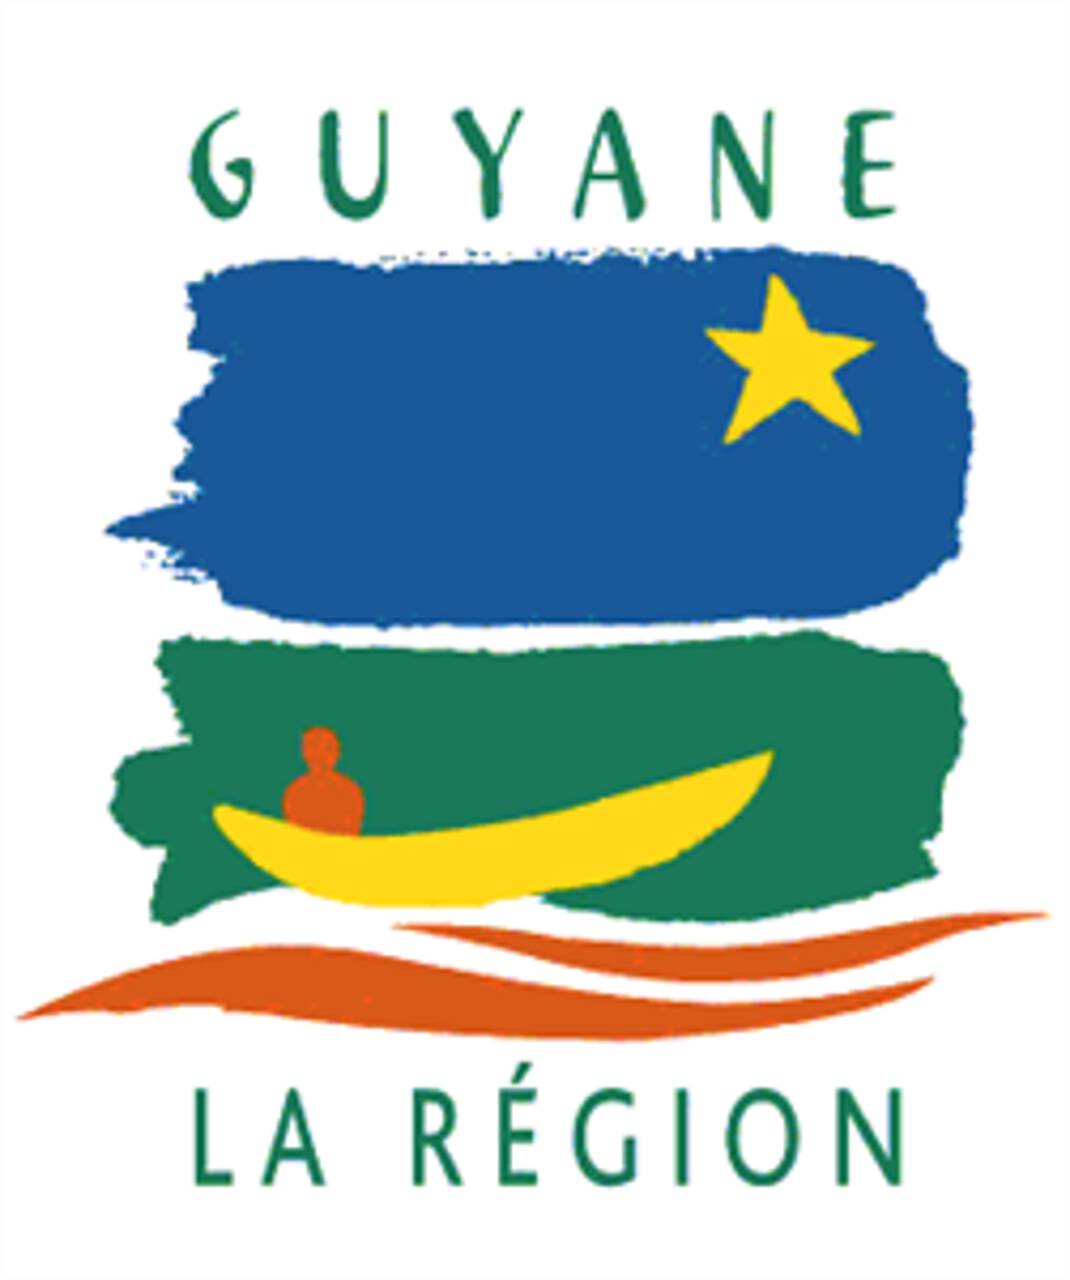 Flagge Französisch-Guayana